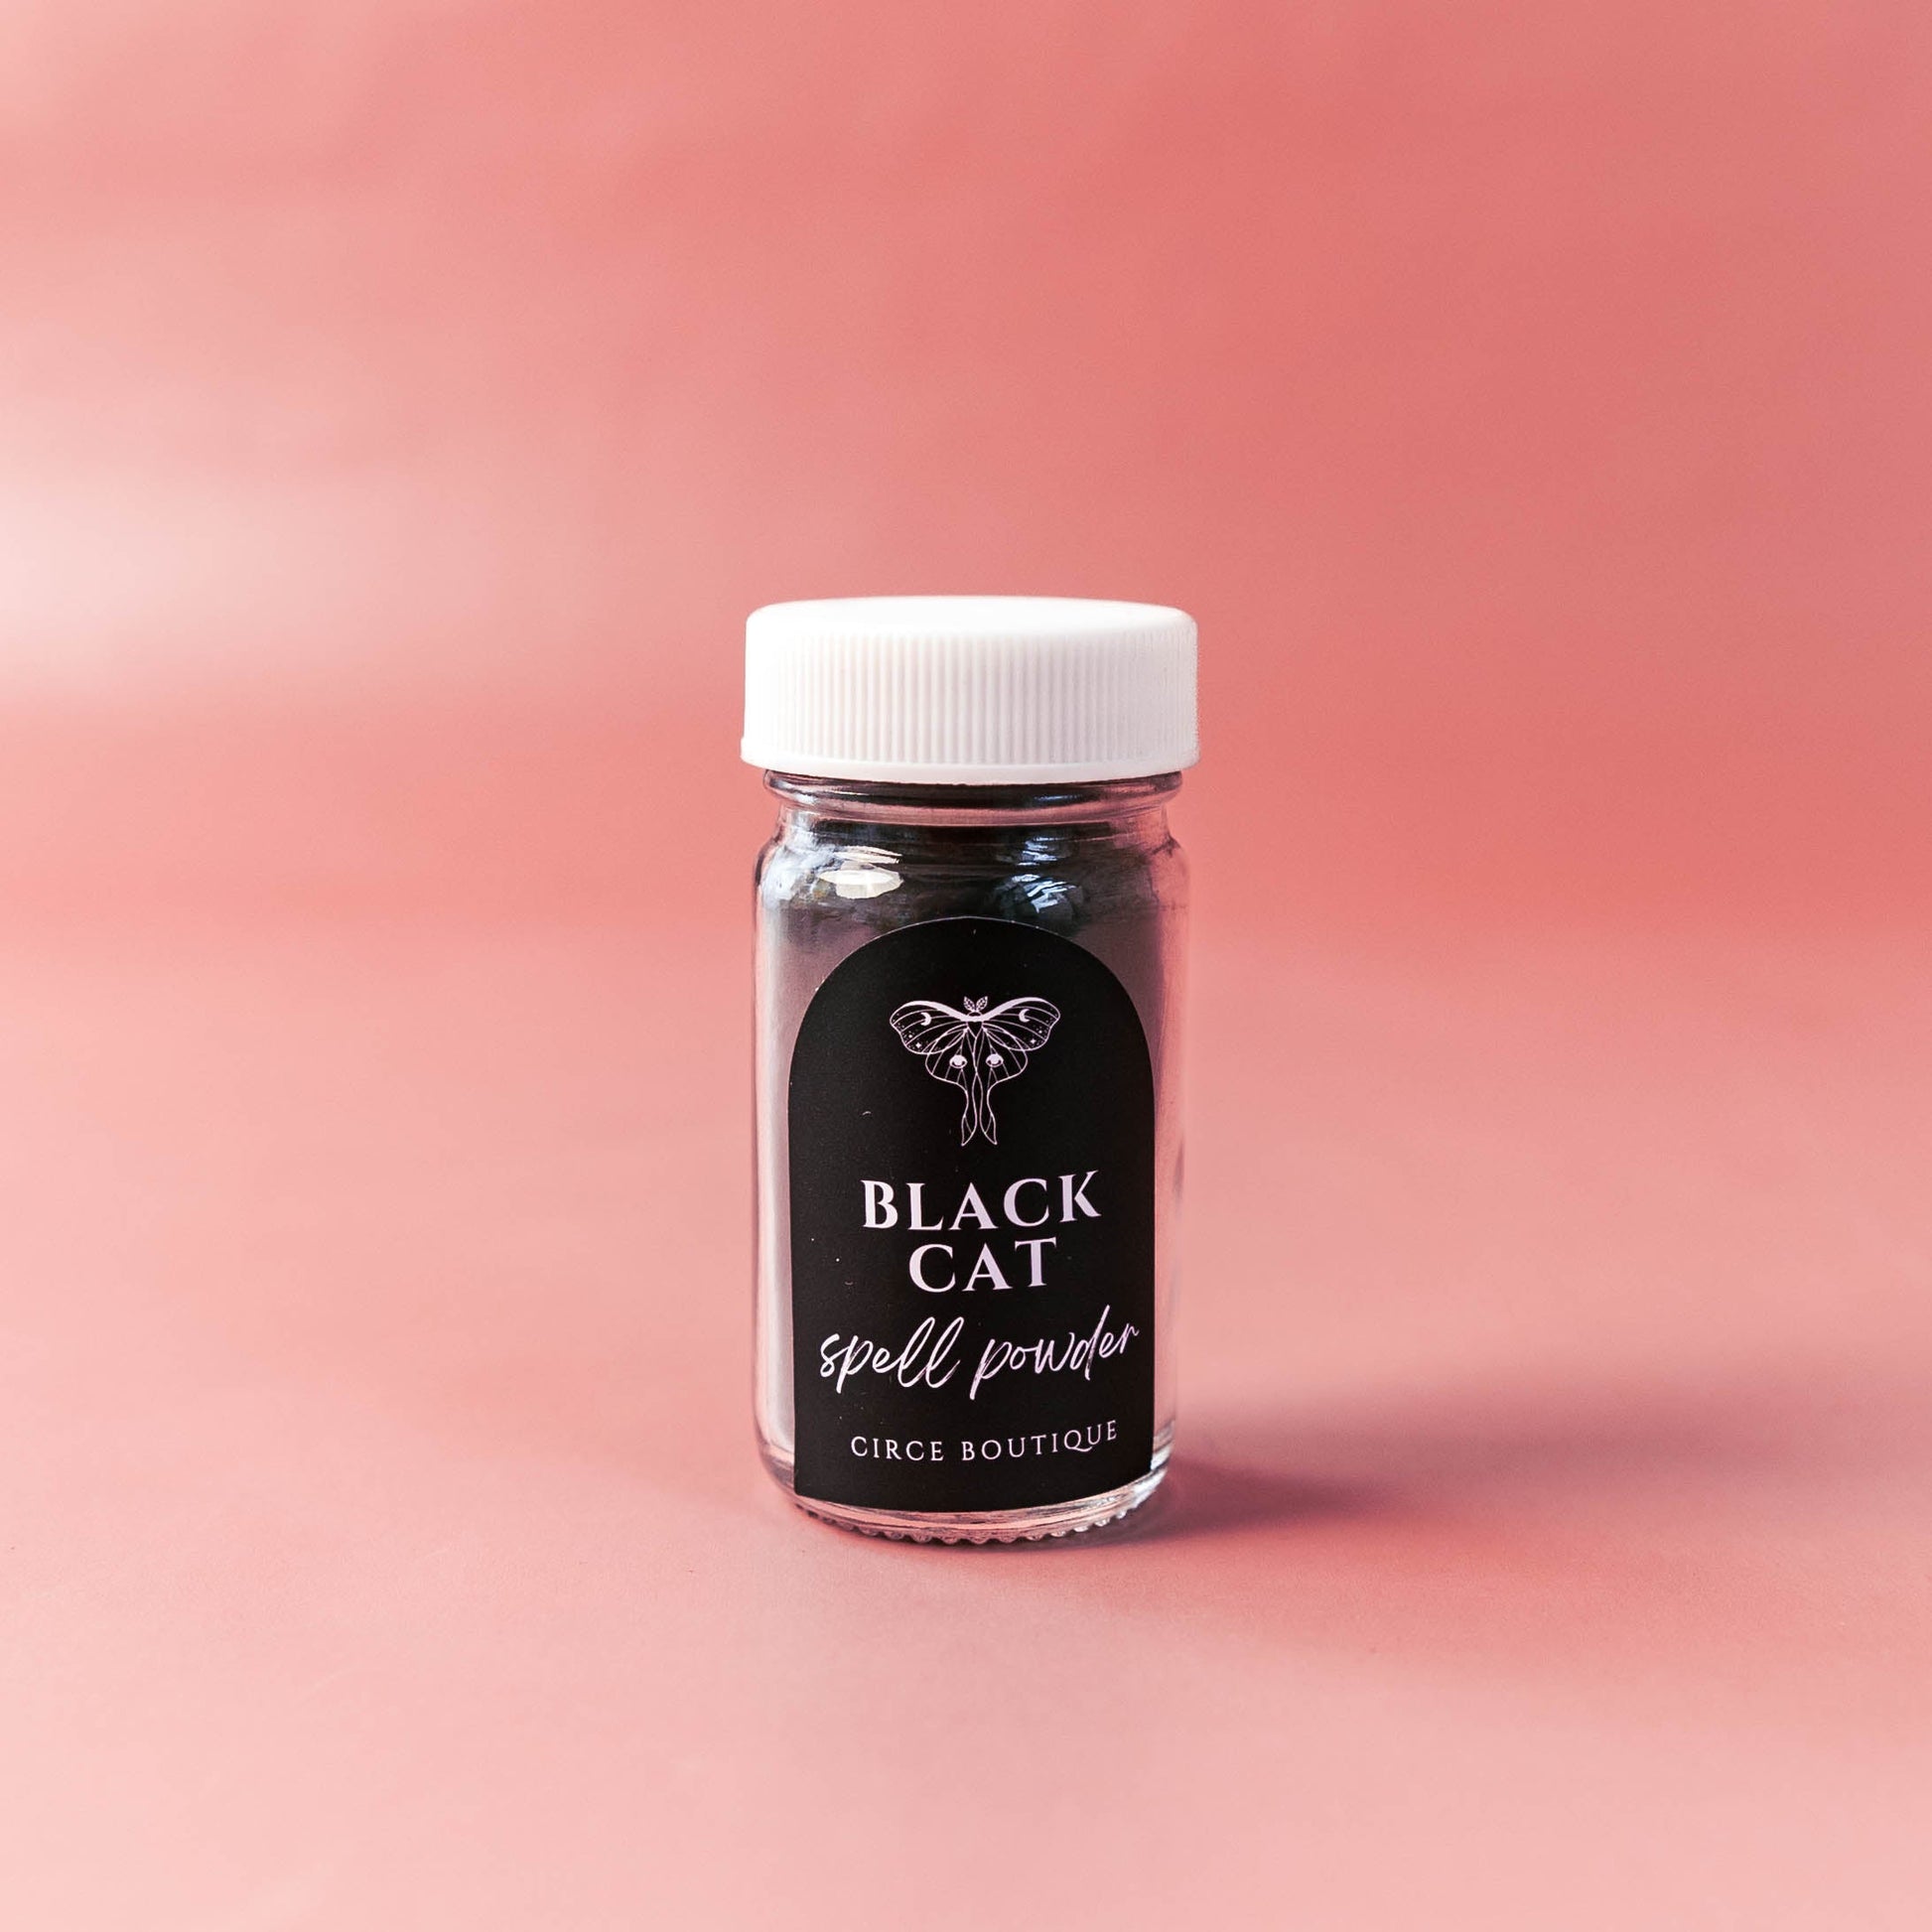 CIRCE Black Cat Spell Powder 1.25 oz. - Spell Powder  from CirceBoutique